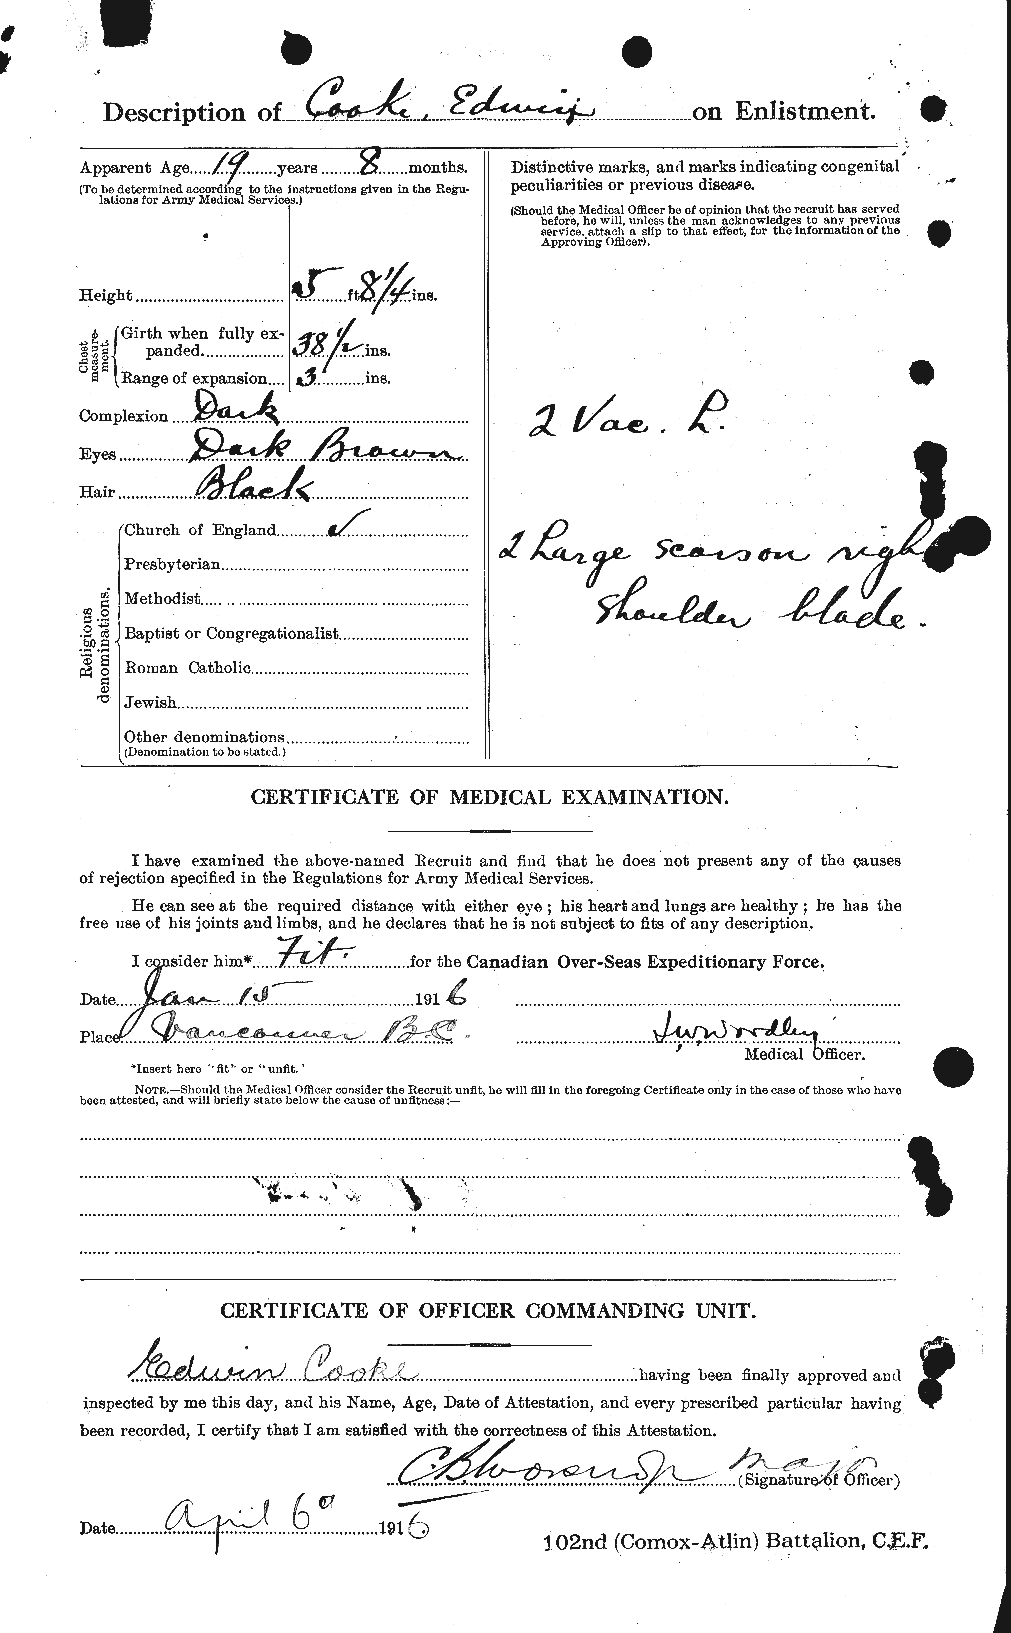 Dossiers du Personnel de la Première Guerre mondiale - CEC 073941b